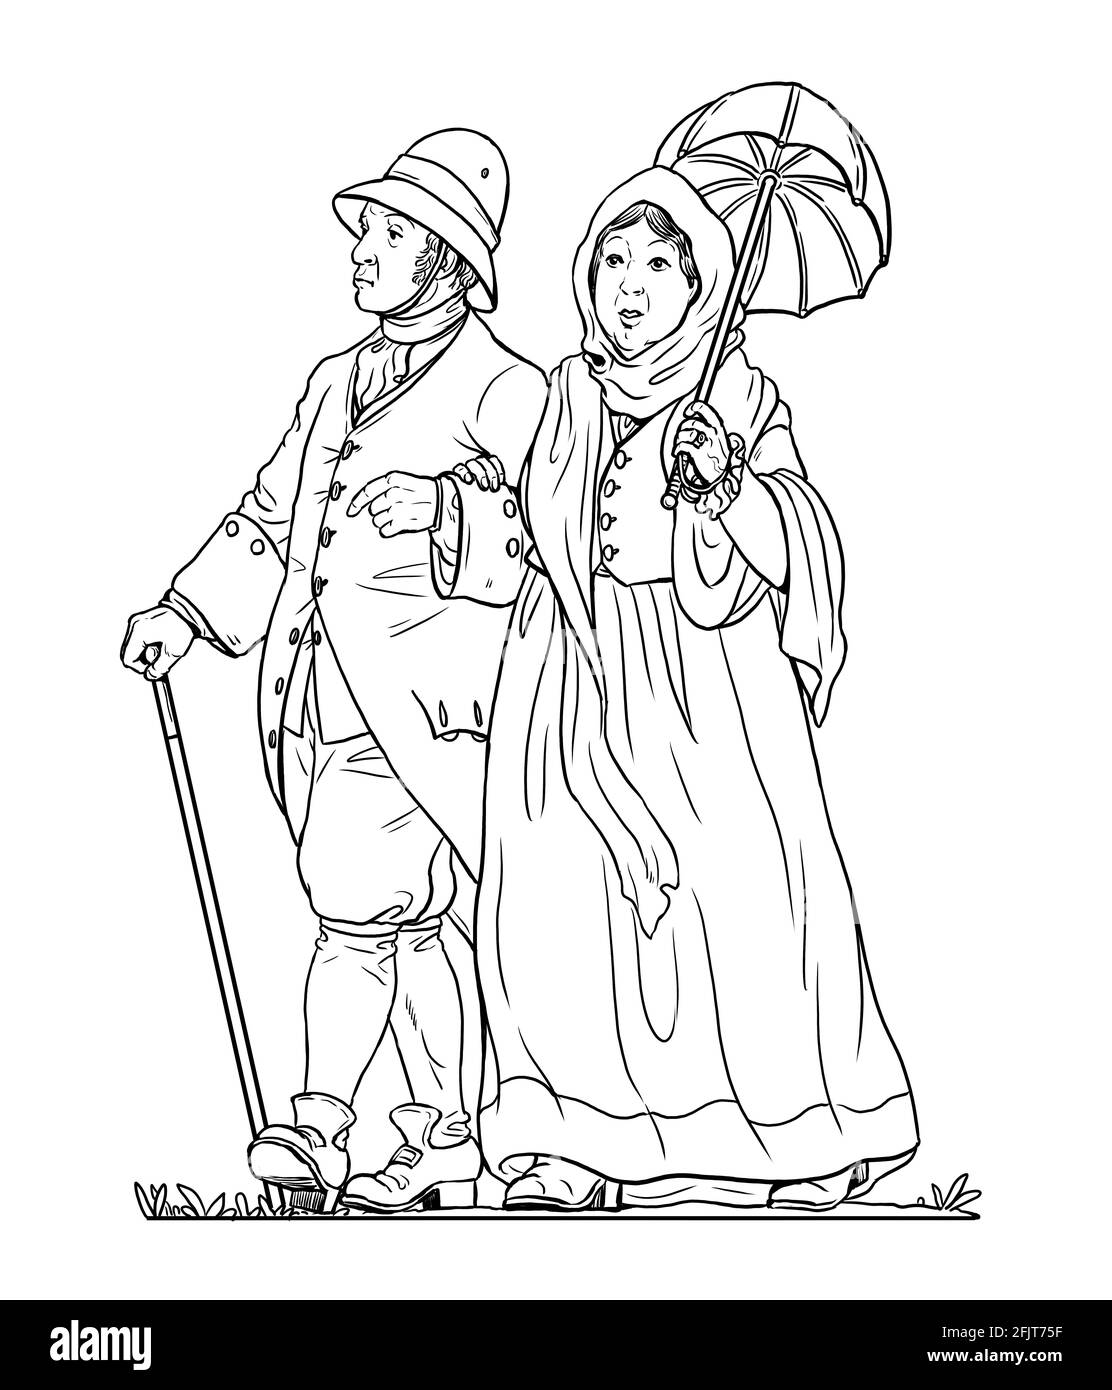 Vermieter und seine Frau gehen spazieren. Baron und sein Gefolge. Digitale Illustration. Stockfoto